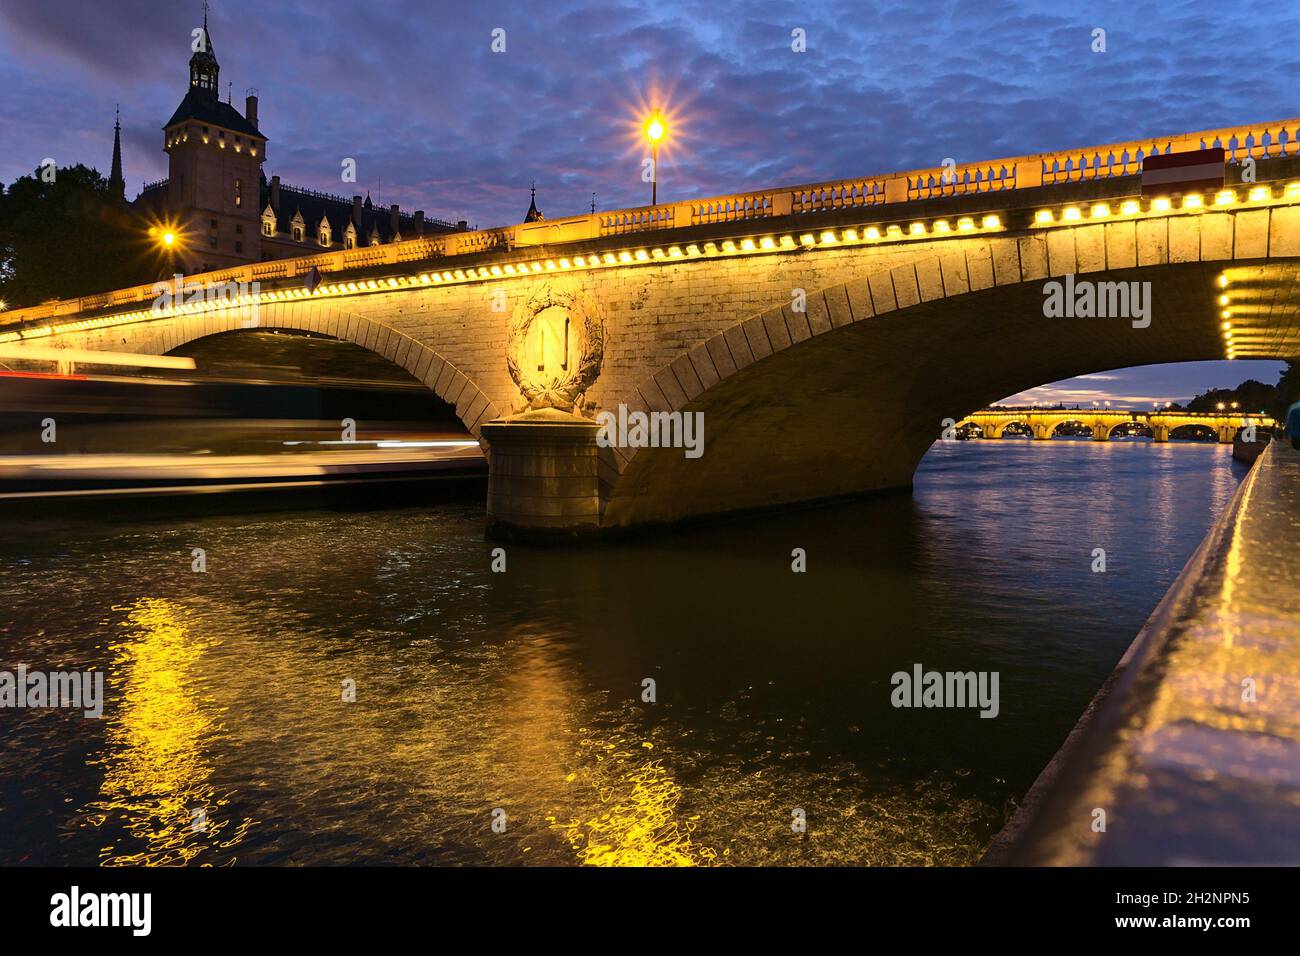 PARIGI, FRANCIA - 01 ottobre 2019: Una vista mozzafiato del Ponte Pont au Change a Parigi di notte, Francia. Una nave da crociera in movimento sfocata Foto Stock